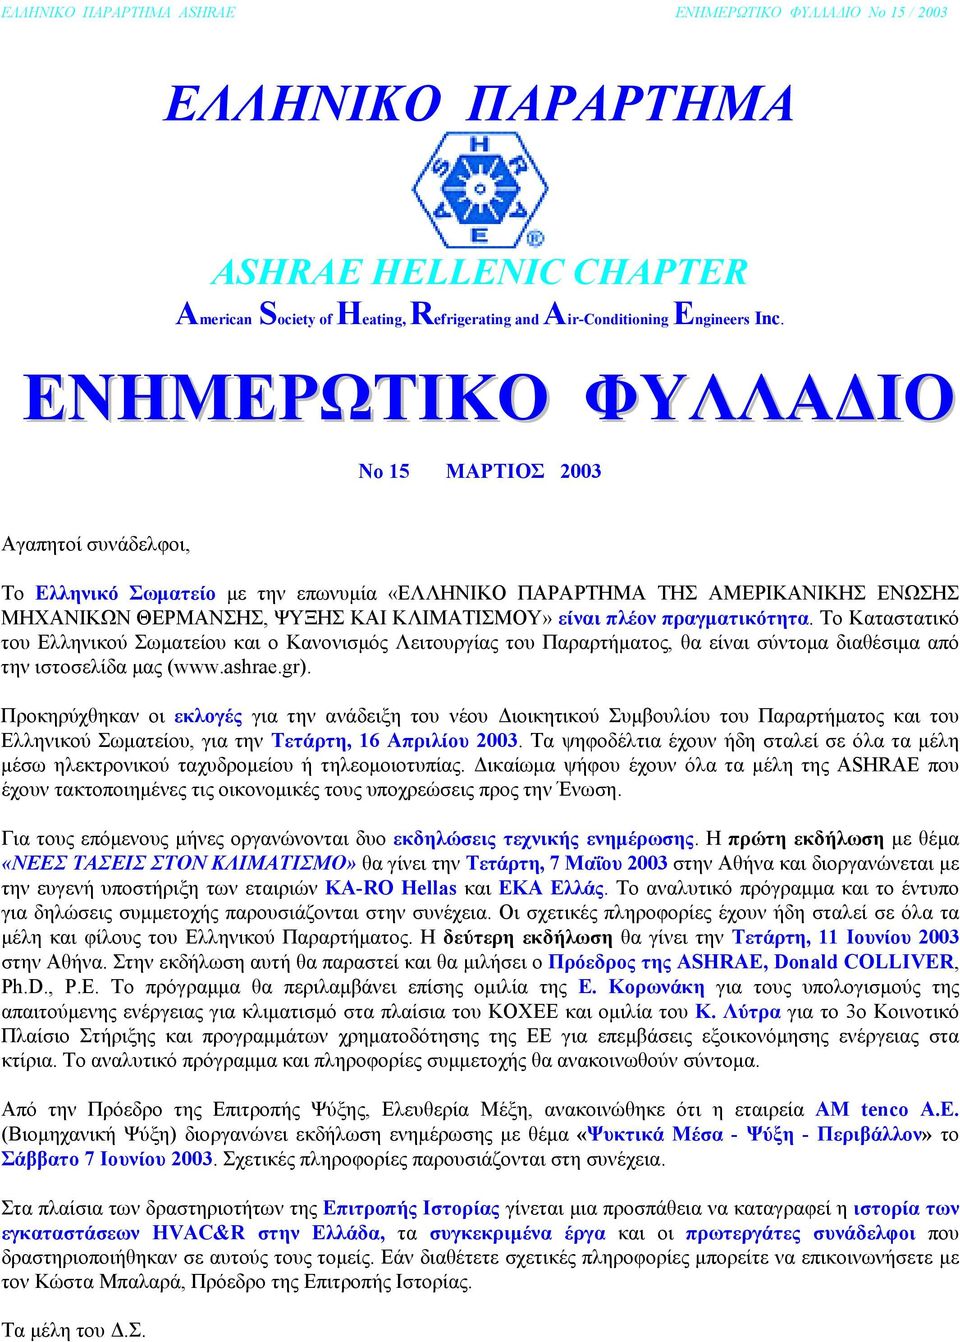 πραγµατικότητα. Το Καταστατικό του Ελληνικού Σωµατείου και ο Κανονισµός Λειτουργίας του Παραρτήµατος, θα είναι σύντοµα διαθέσιµα από την ιστοσελίδα µας (www.ashrae.gr).